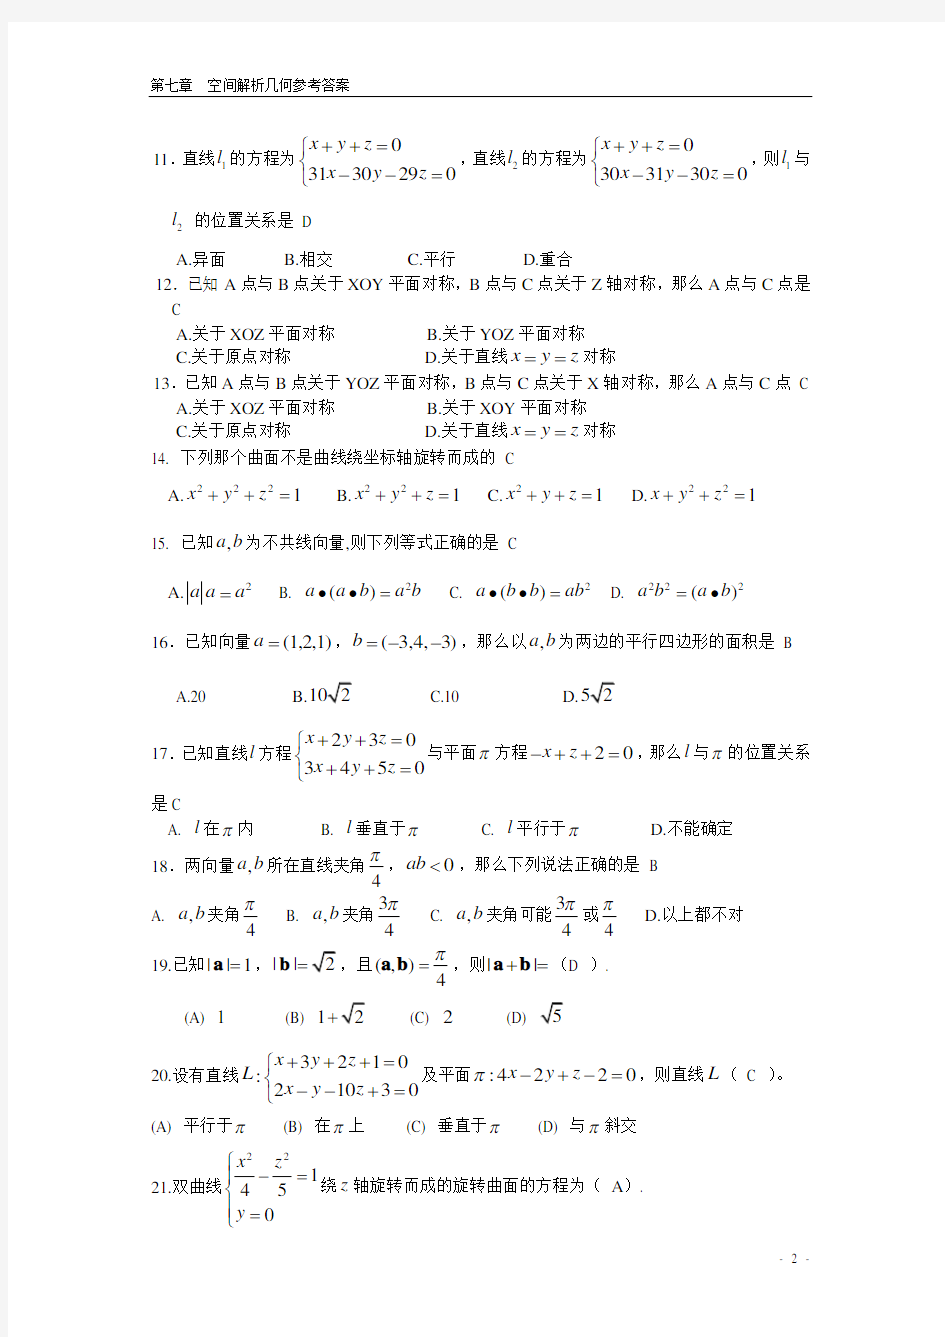 向量代数与空间解析几何 期末复习题 高等数学下册 (上海电机学院)